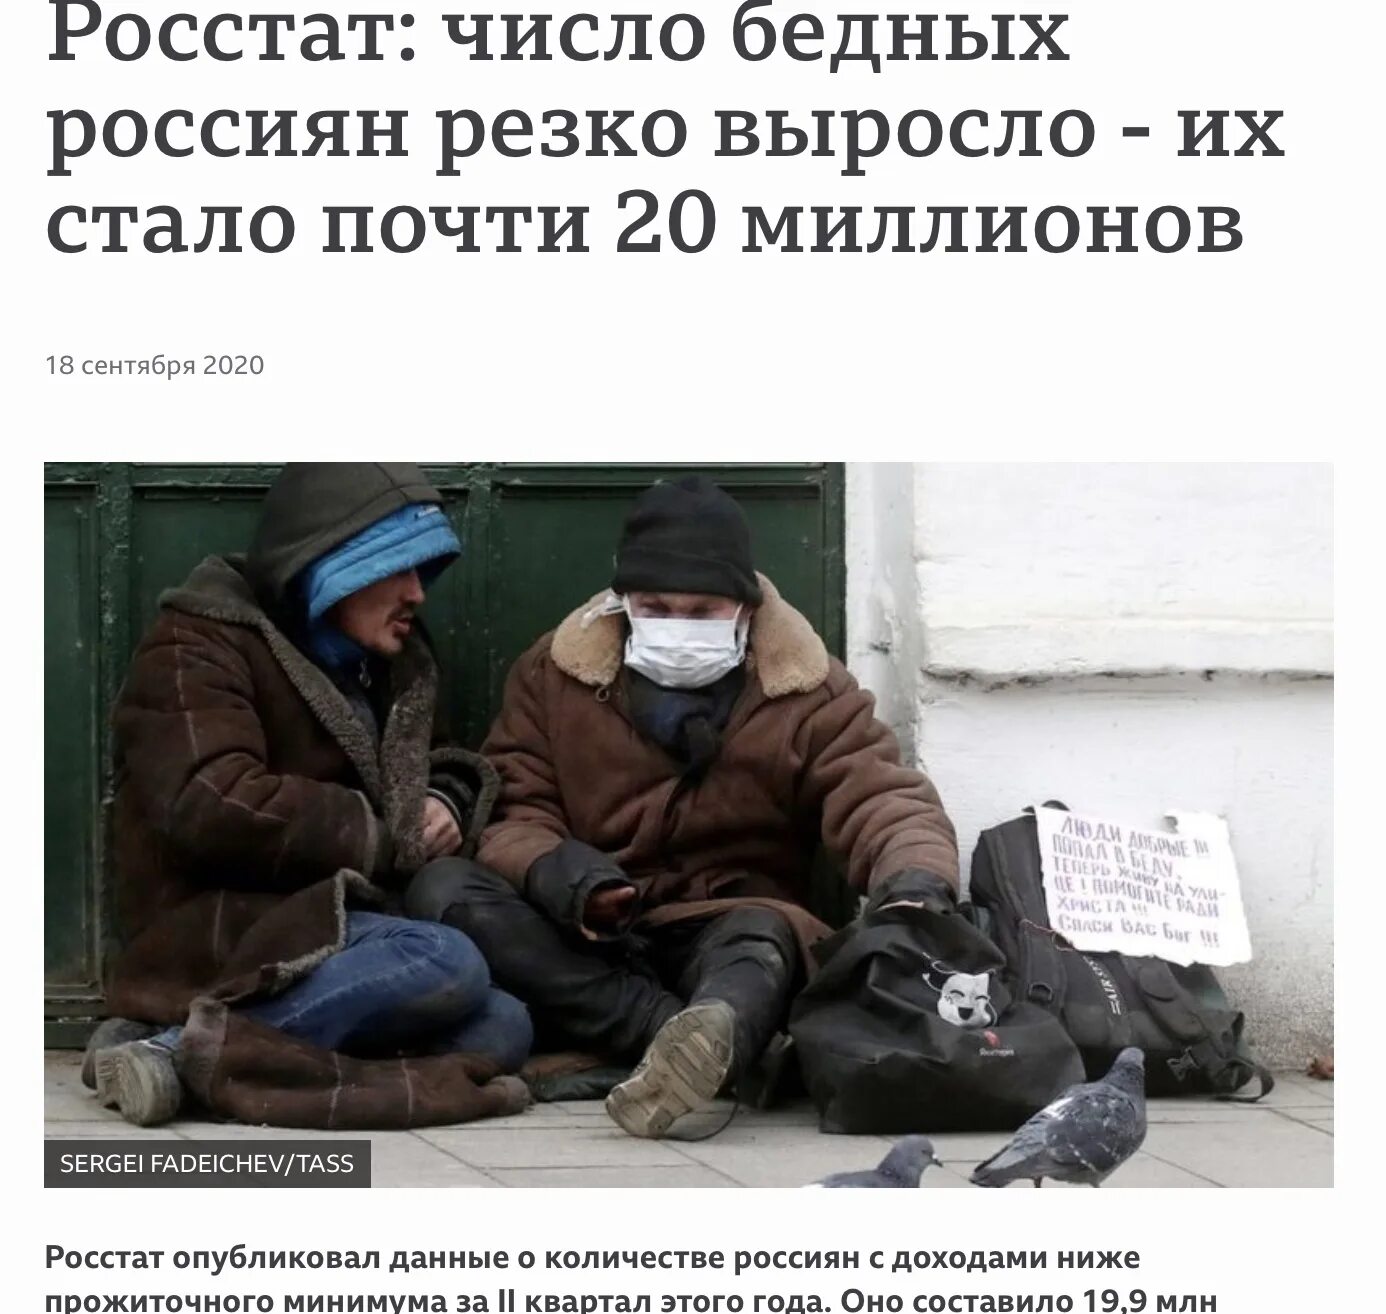 Бедность в России. Нищие россияне. Бедность населения.